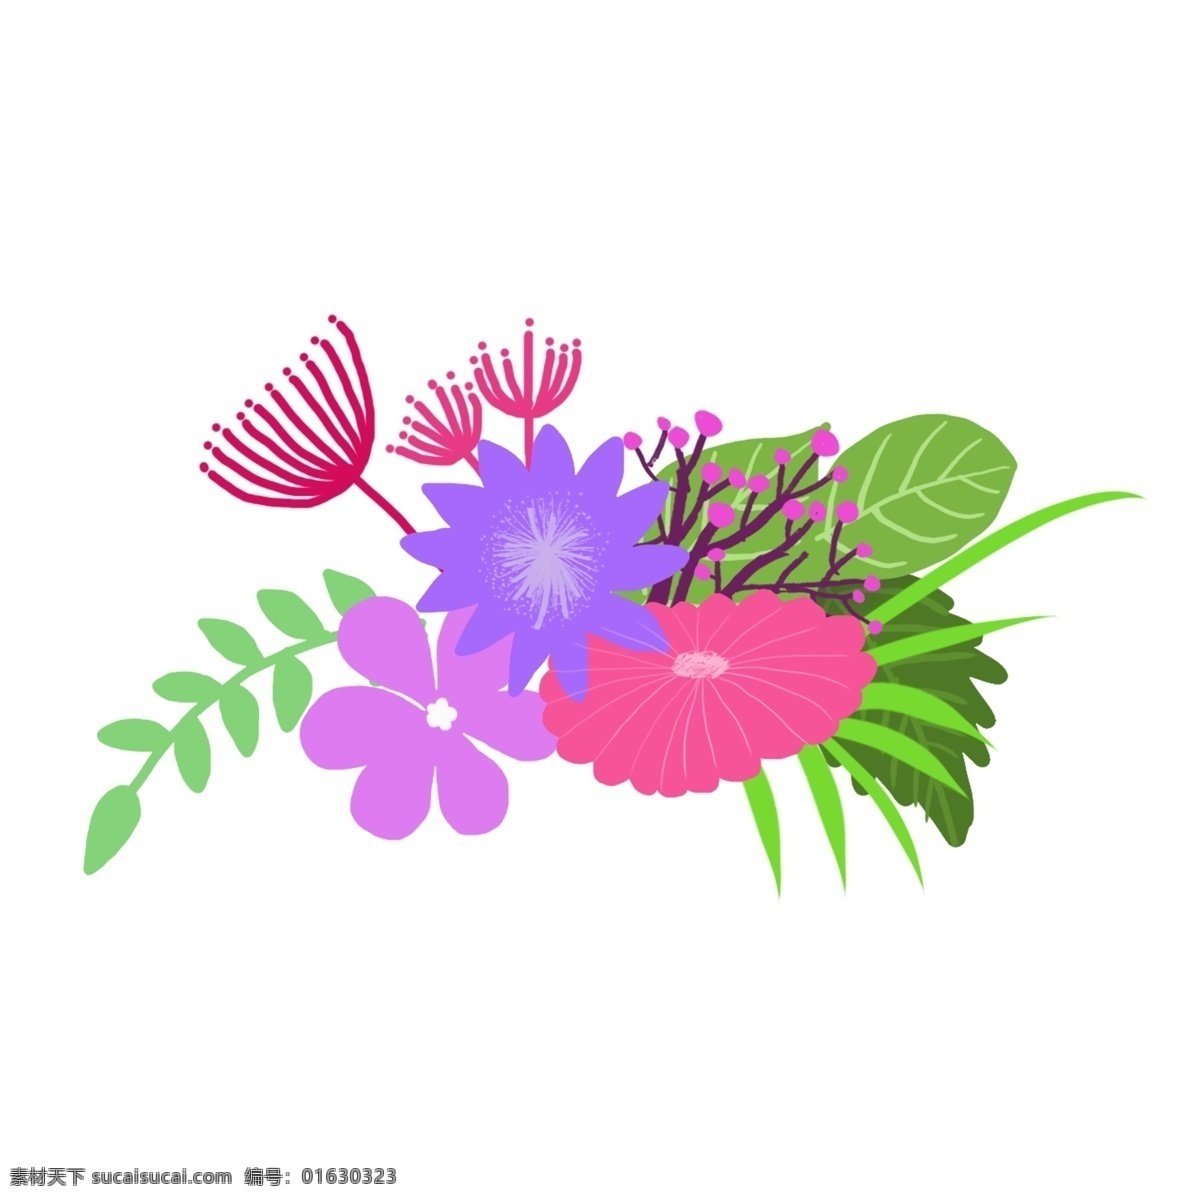 手绘 花卉 植物 小 清新 风格 插画 花朵 手绘花 装饰花 小清机新花朵